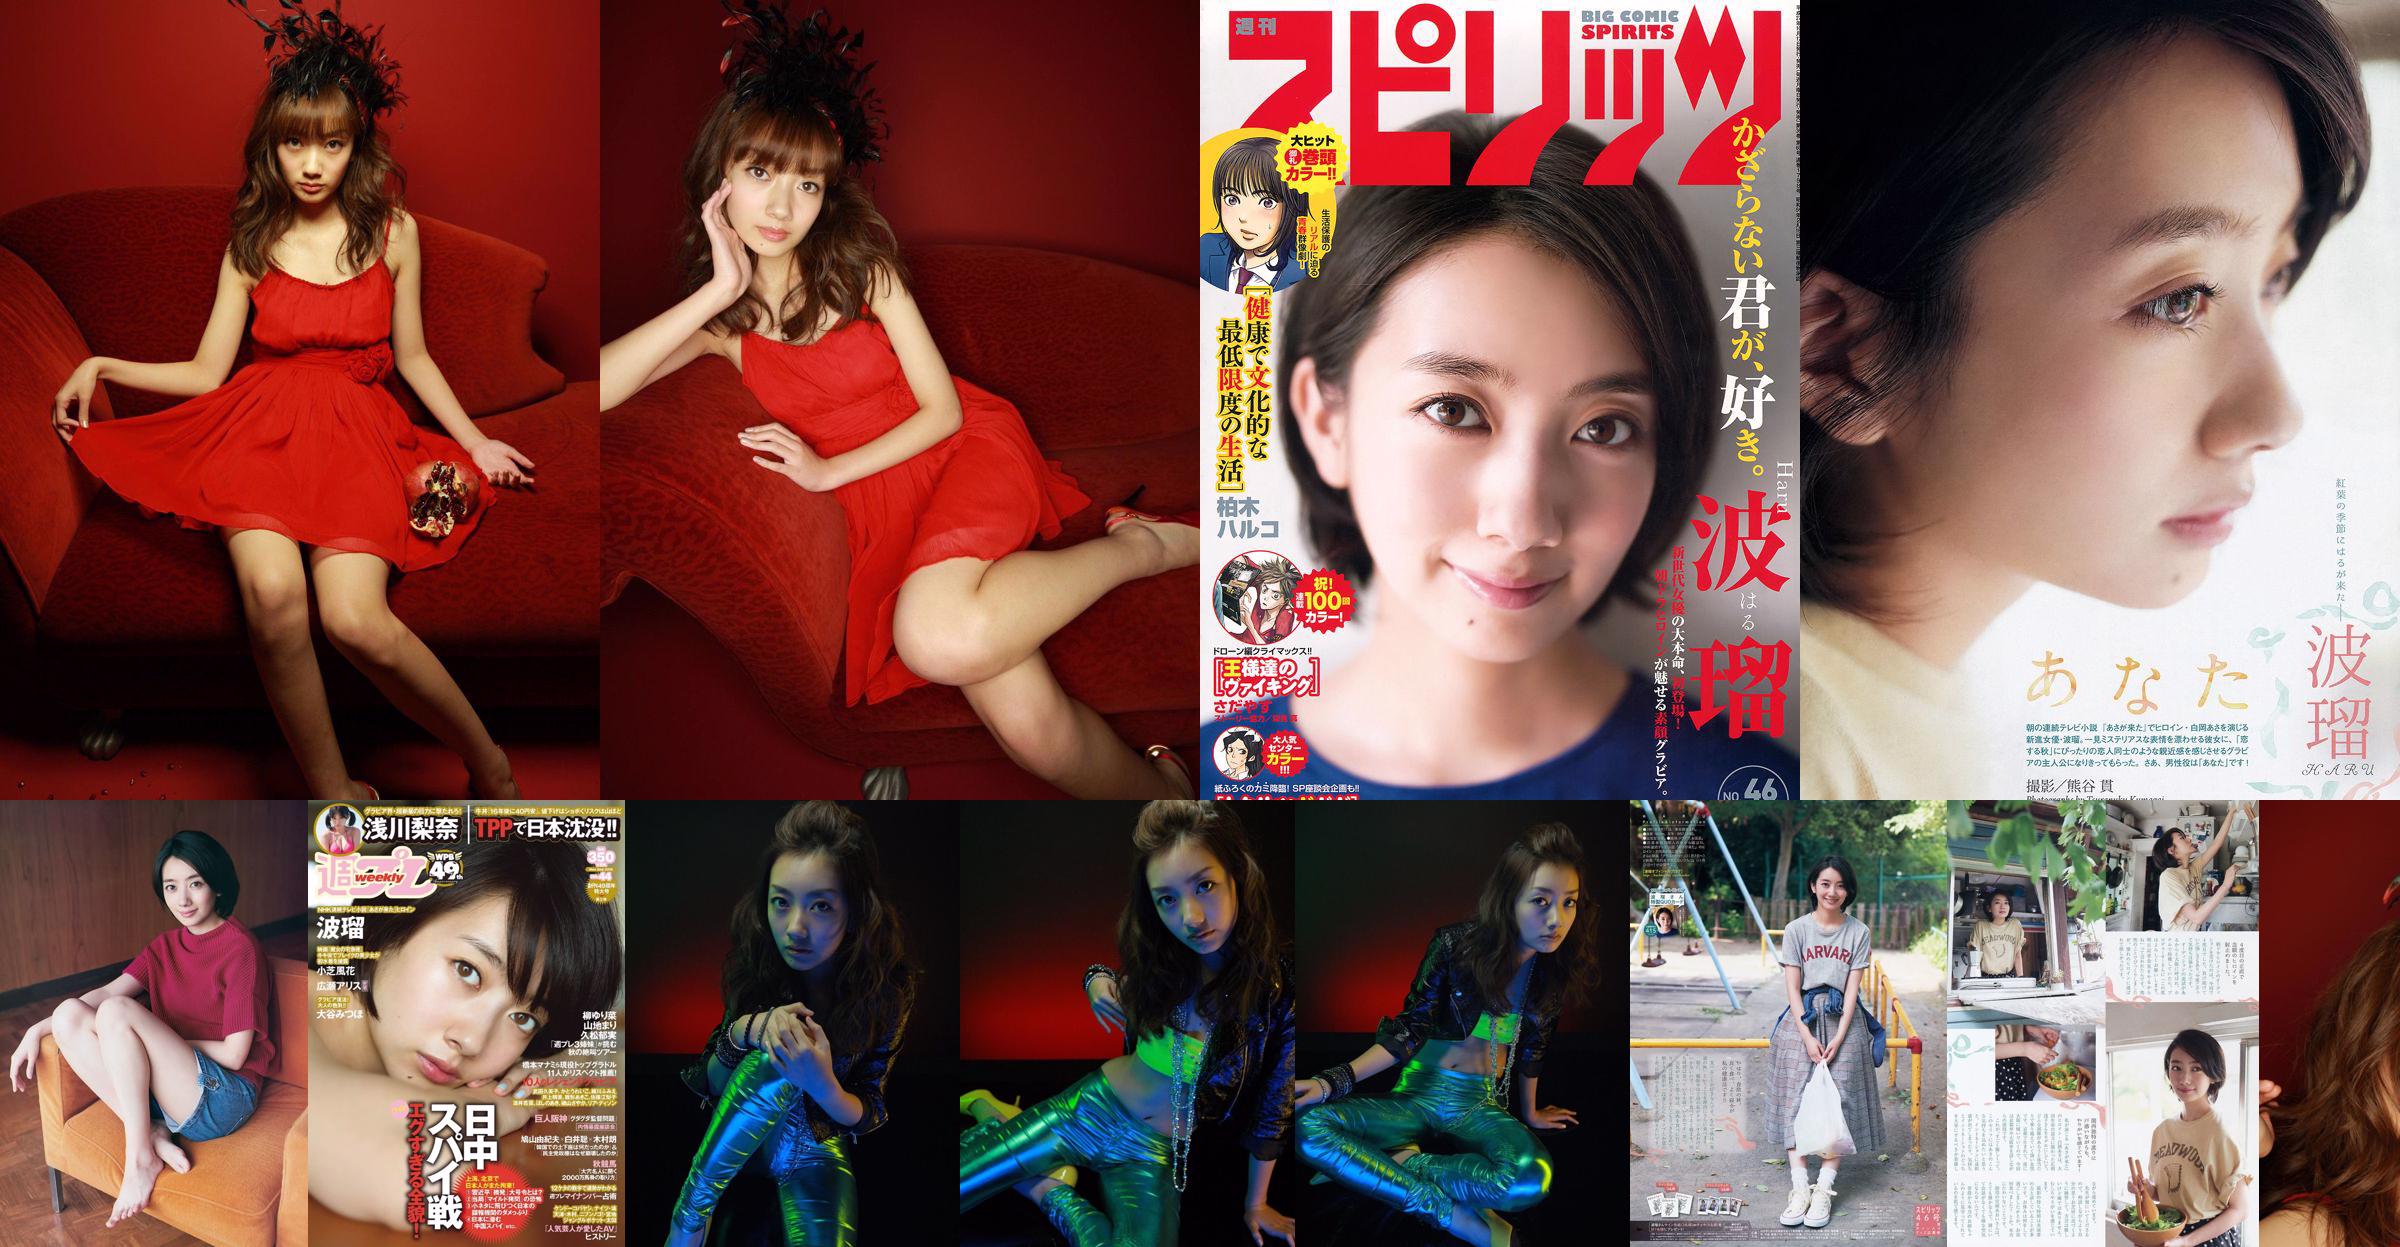 Nanboru "Super Beautiful Girl-Boru vecht voor het eerst in diepdruk" [Sabra.net] No.417cbb Pagina 3